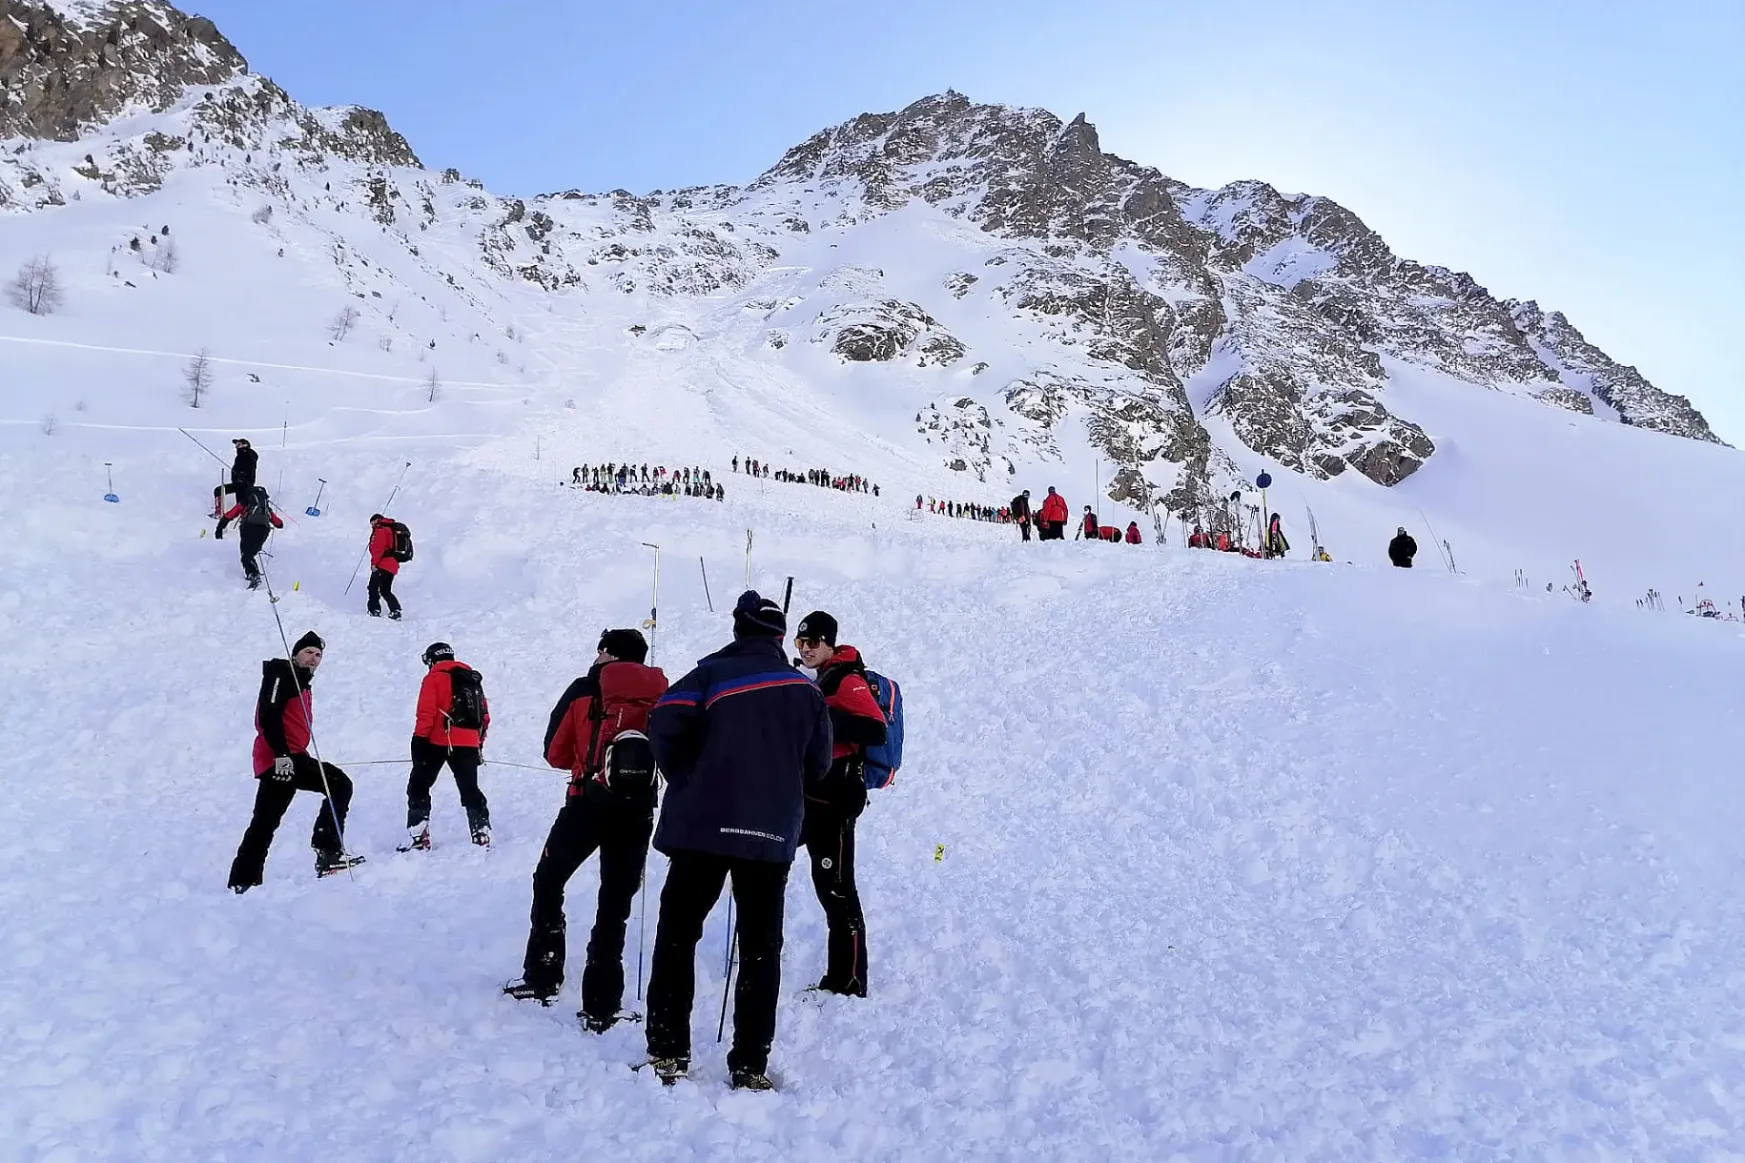 Több síelő is meghalt lavinabalesetekben Ausztriában